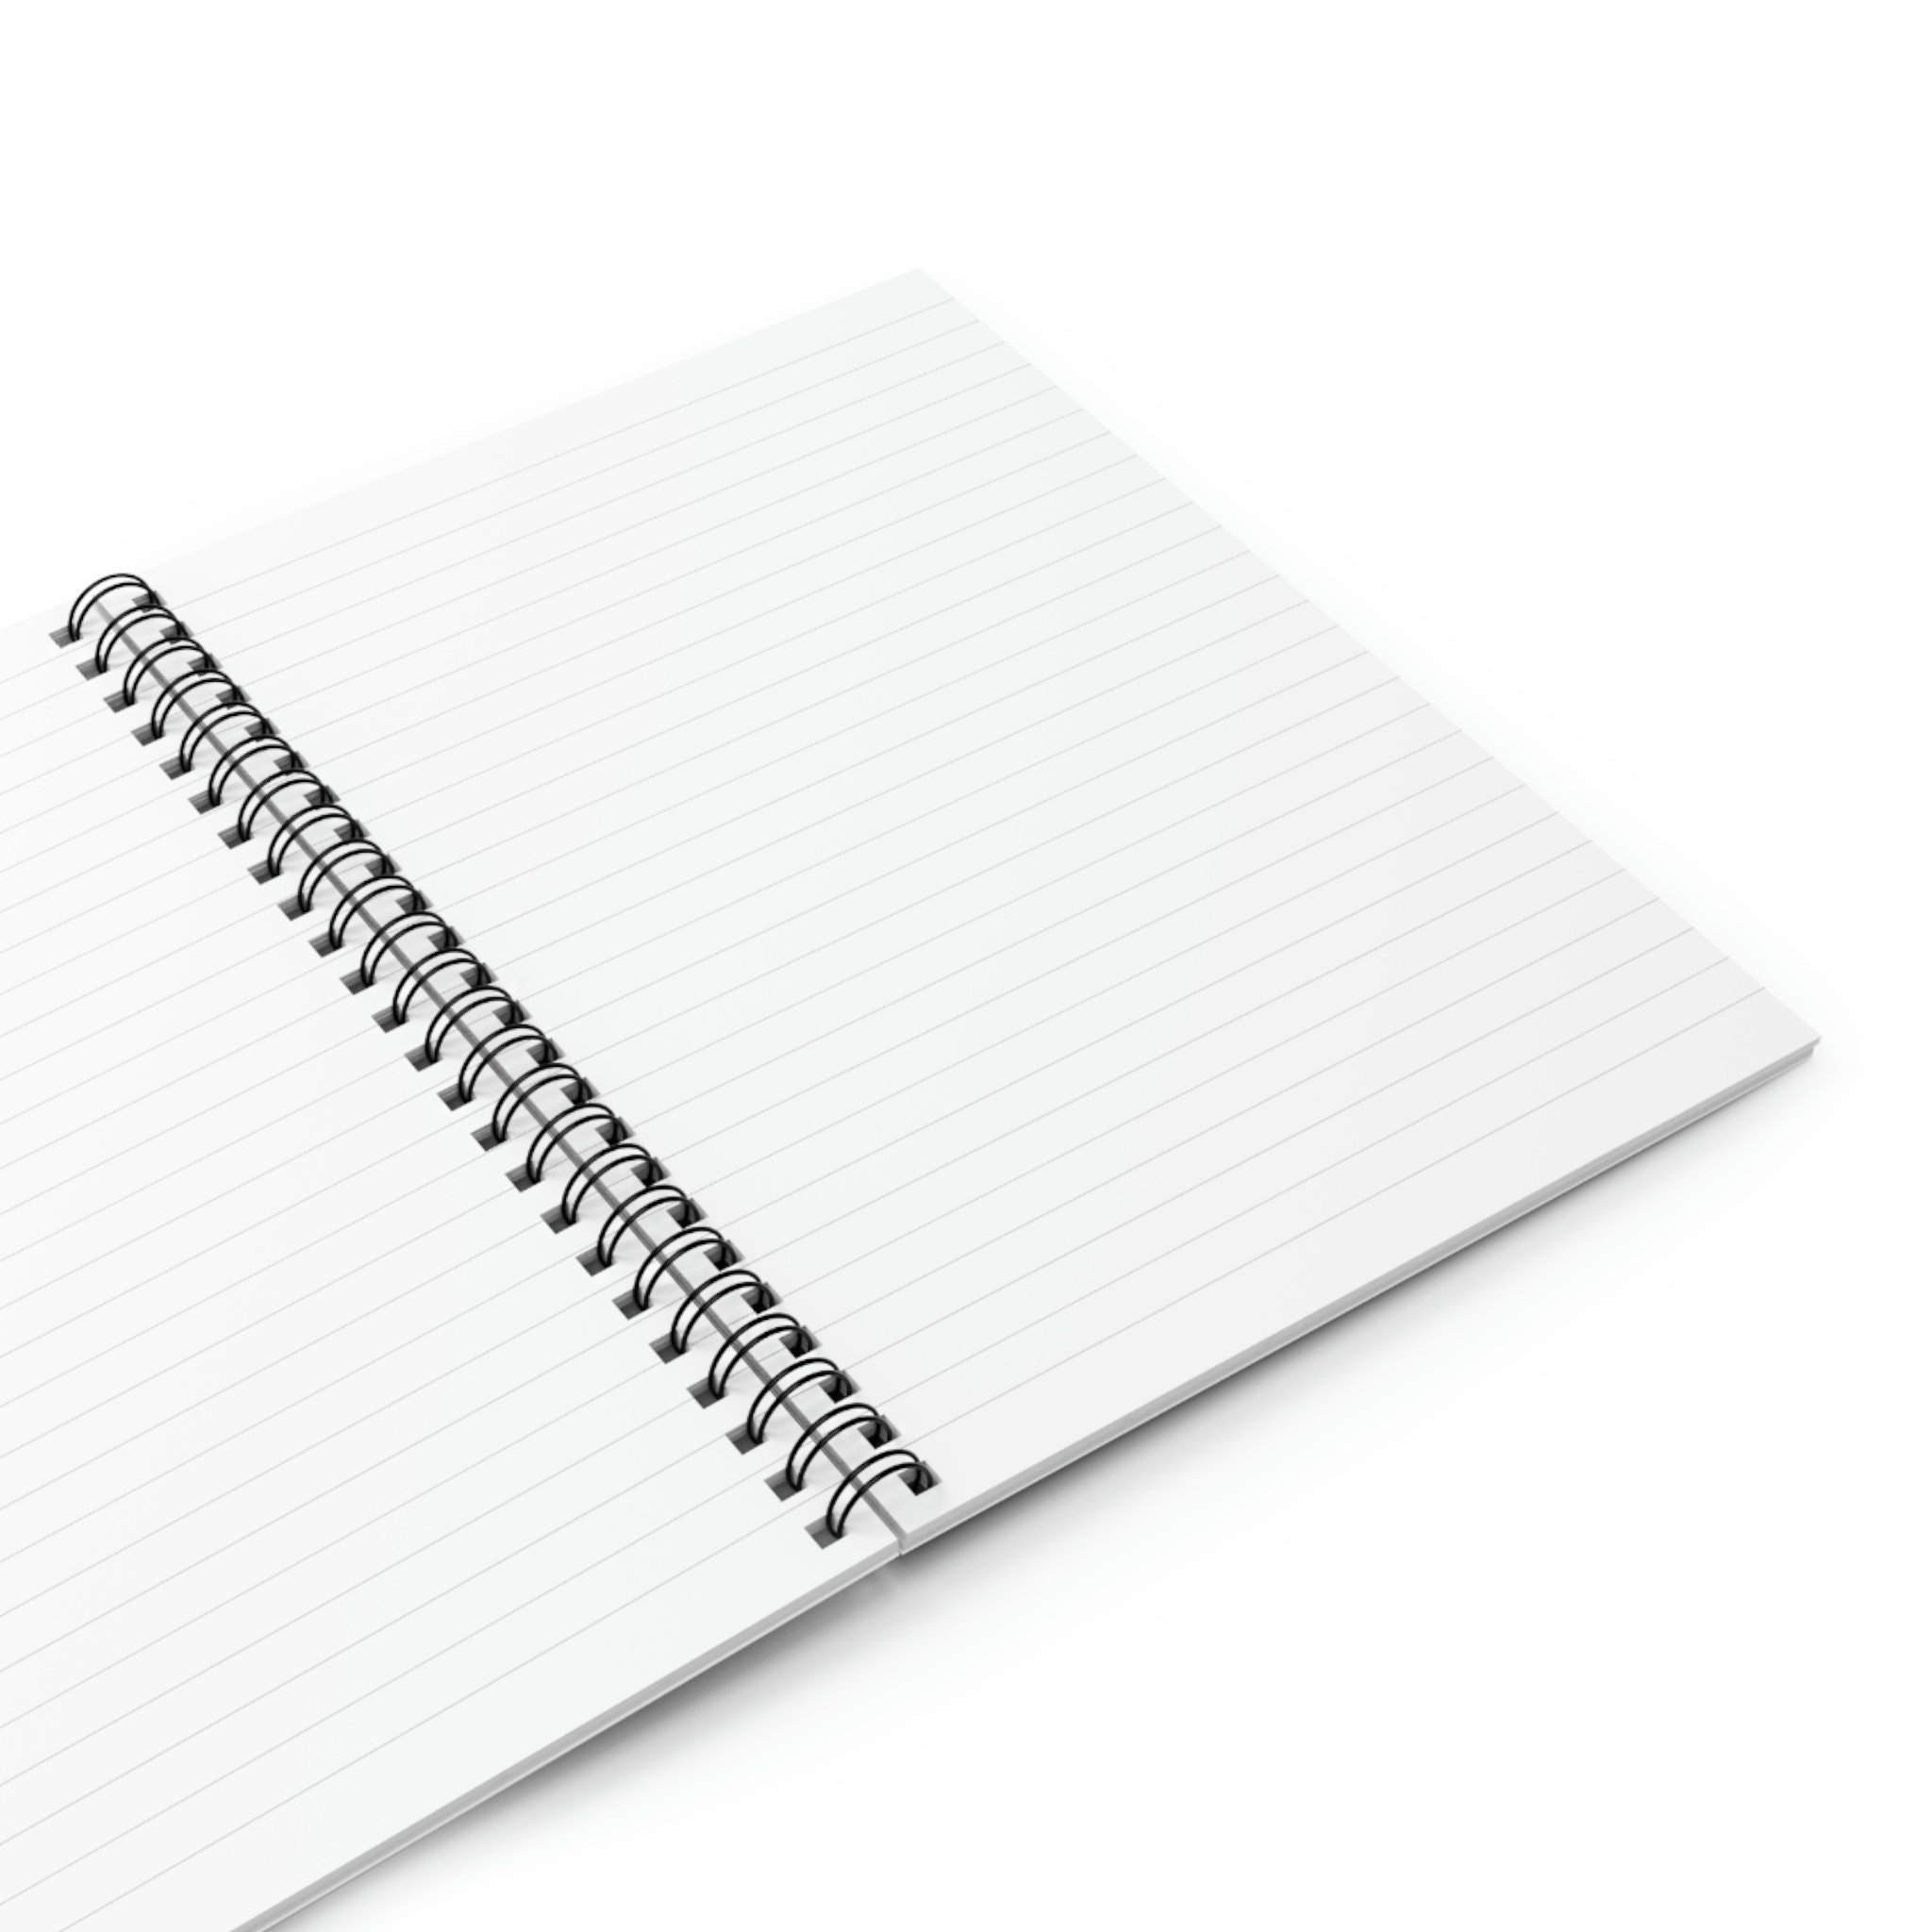 Blank Spiral Notebook Journal, Positive Journal, Lined